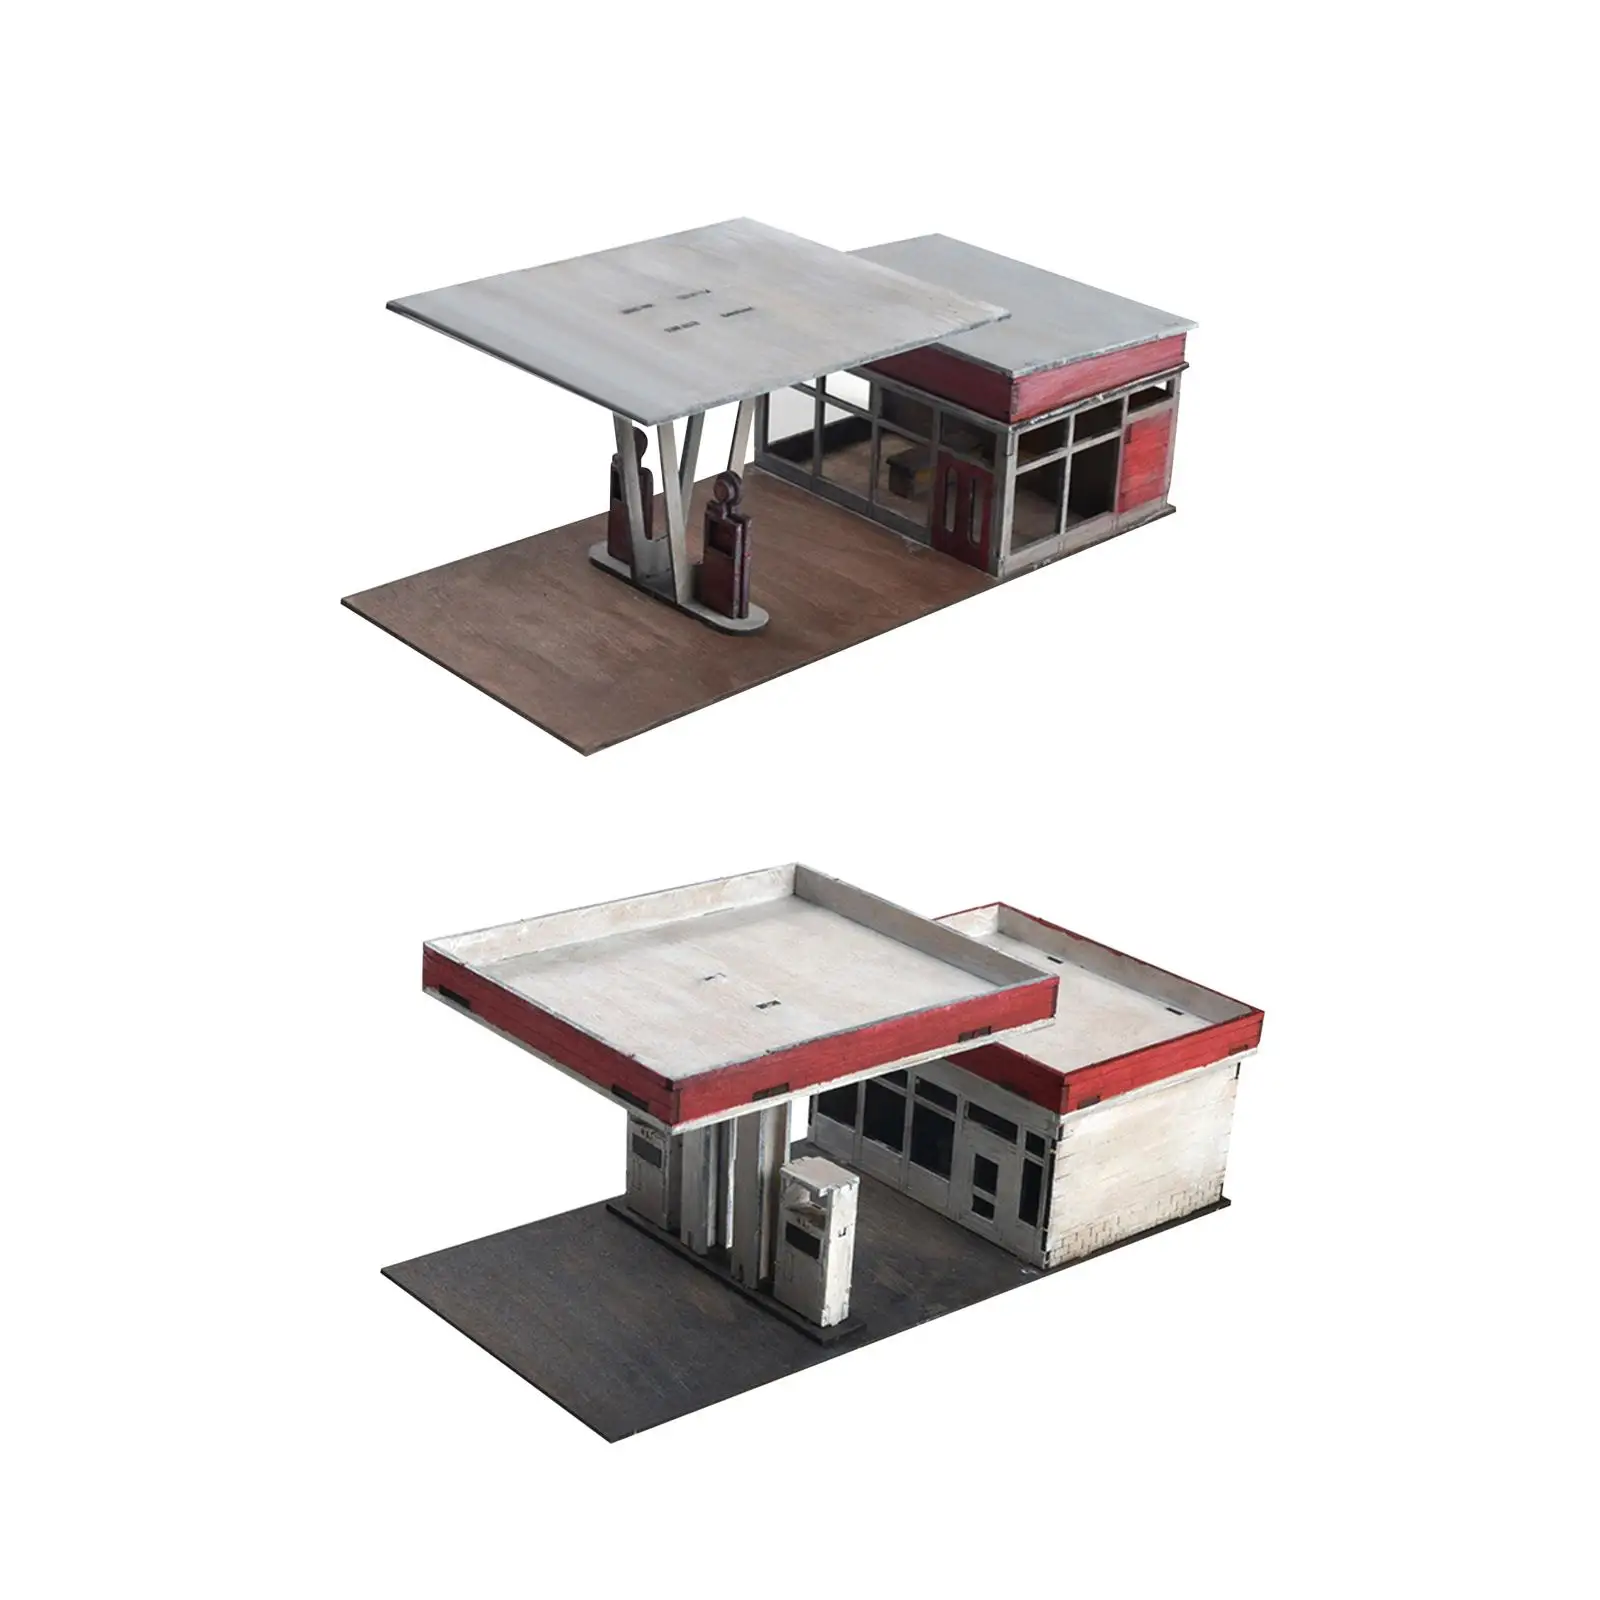 1:72 1:64 Handmade Miniature House Architecture Scene Model for Architecture Model Sand Table Accessory Diorama Micro Landscape